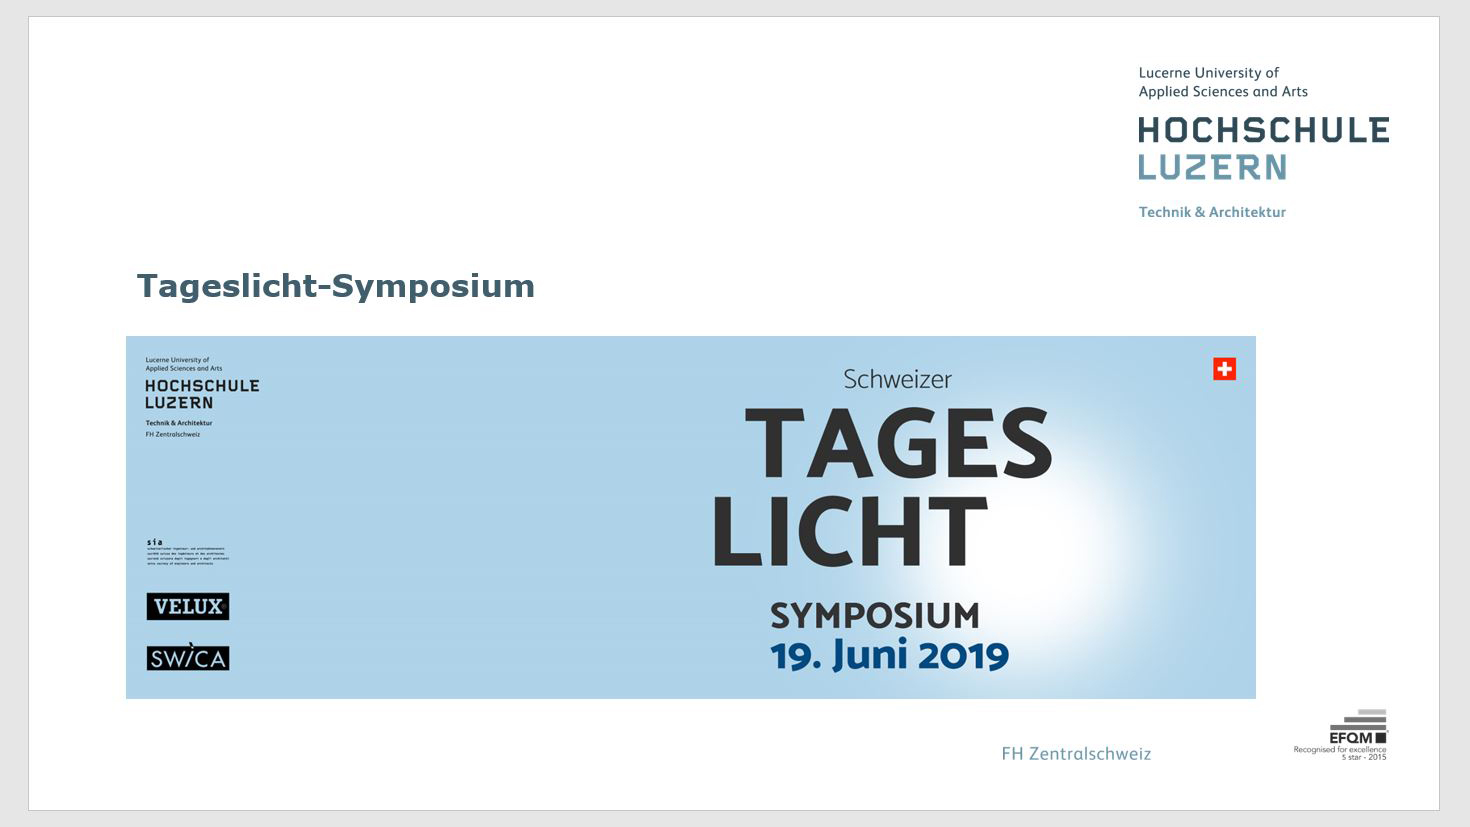 Pressespiegel zum Tageslicht-Symposium 2019